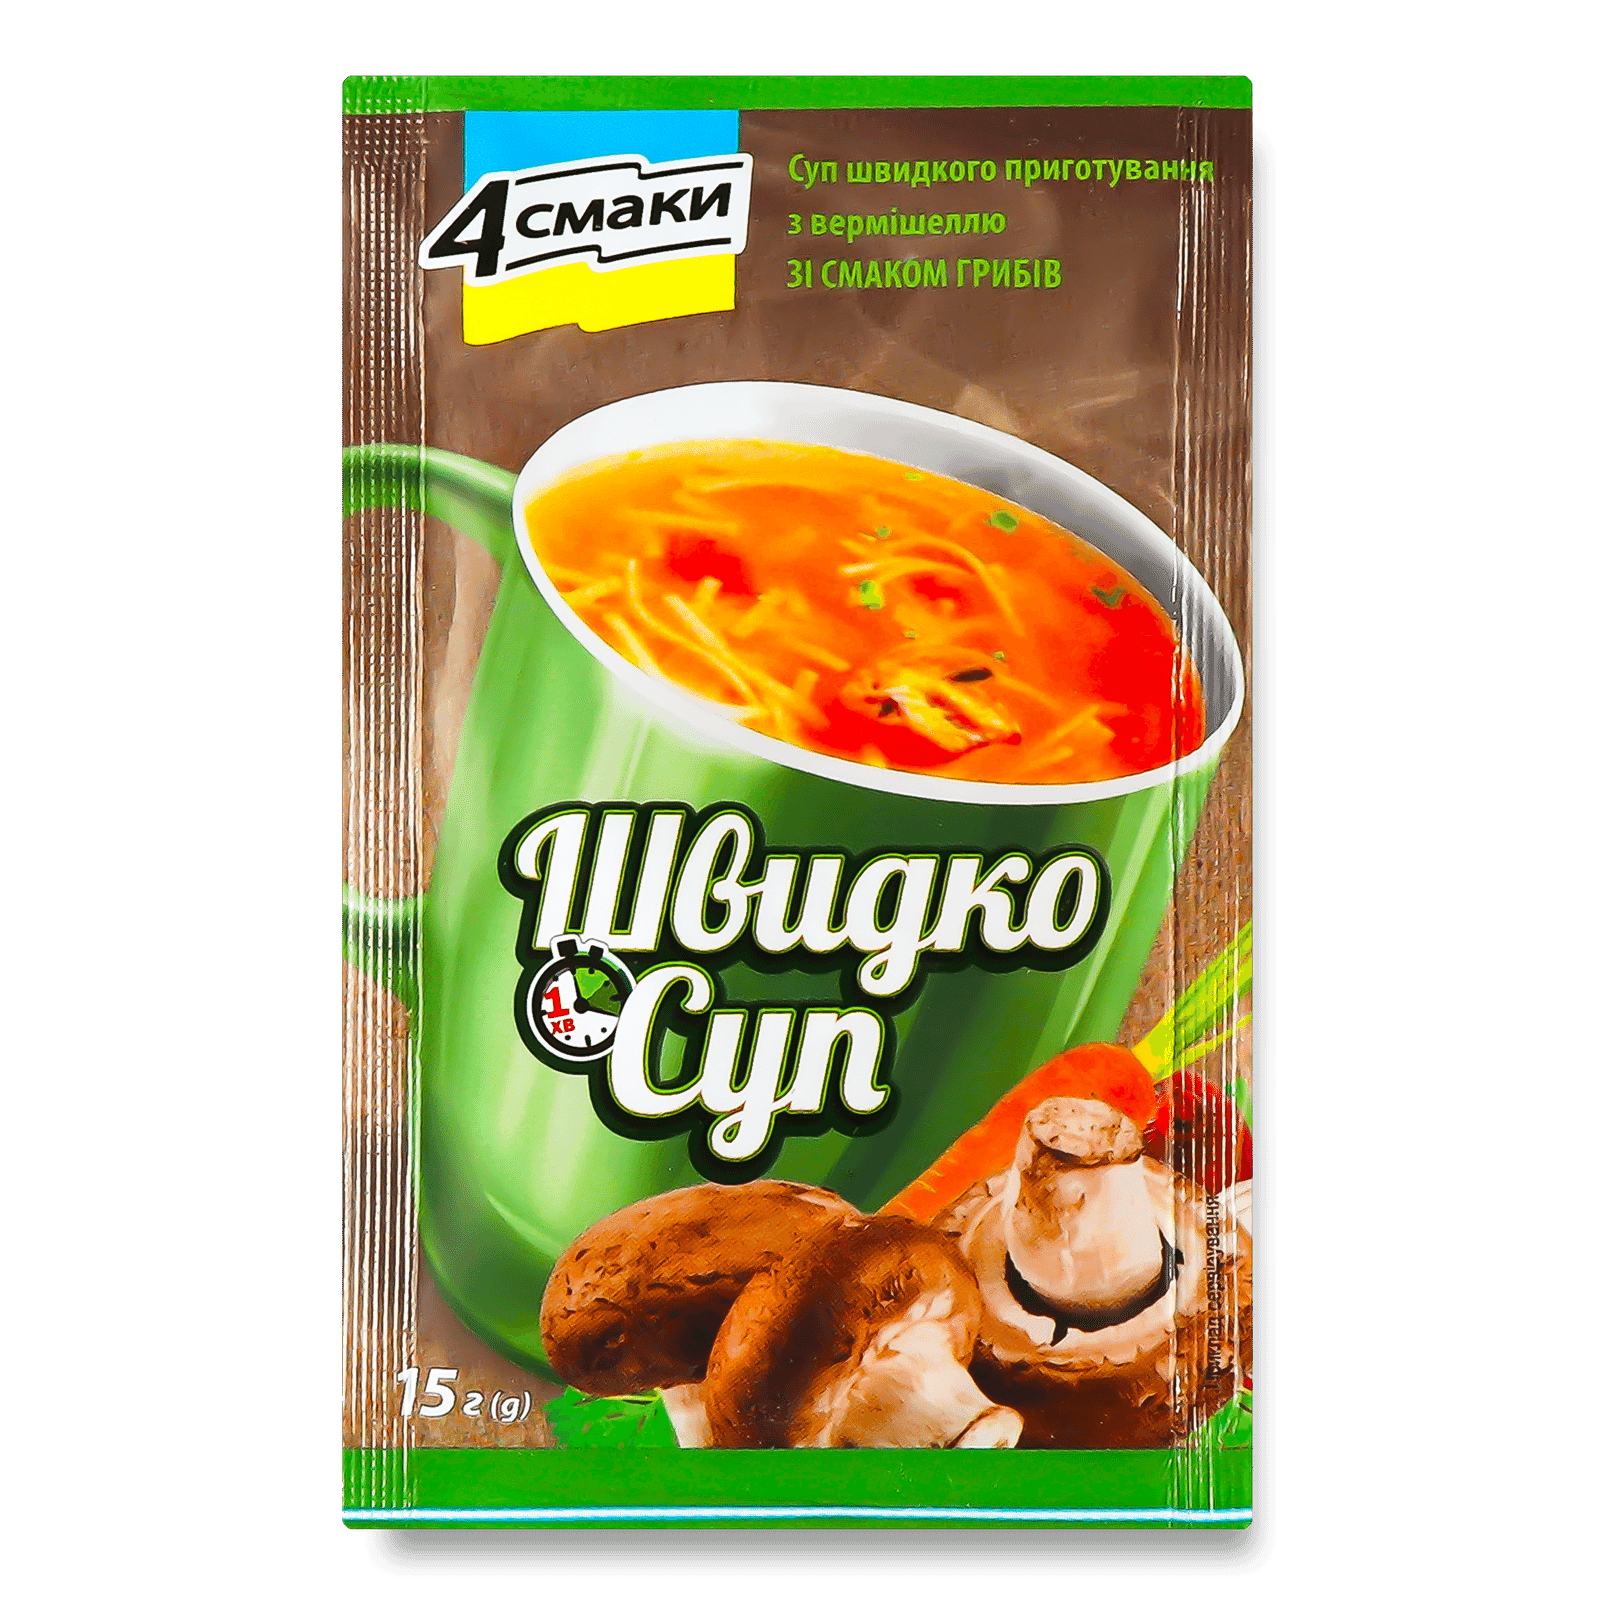 Швидко-суп з вермішеллю із смаком грибів - 1